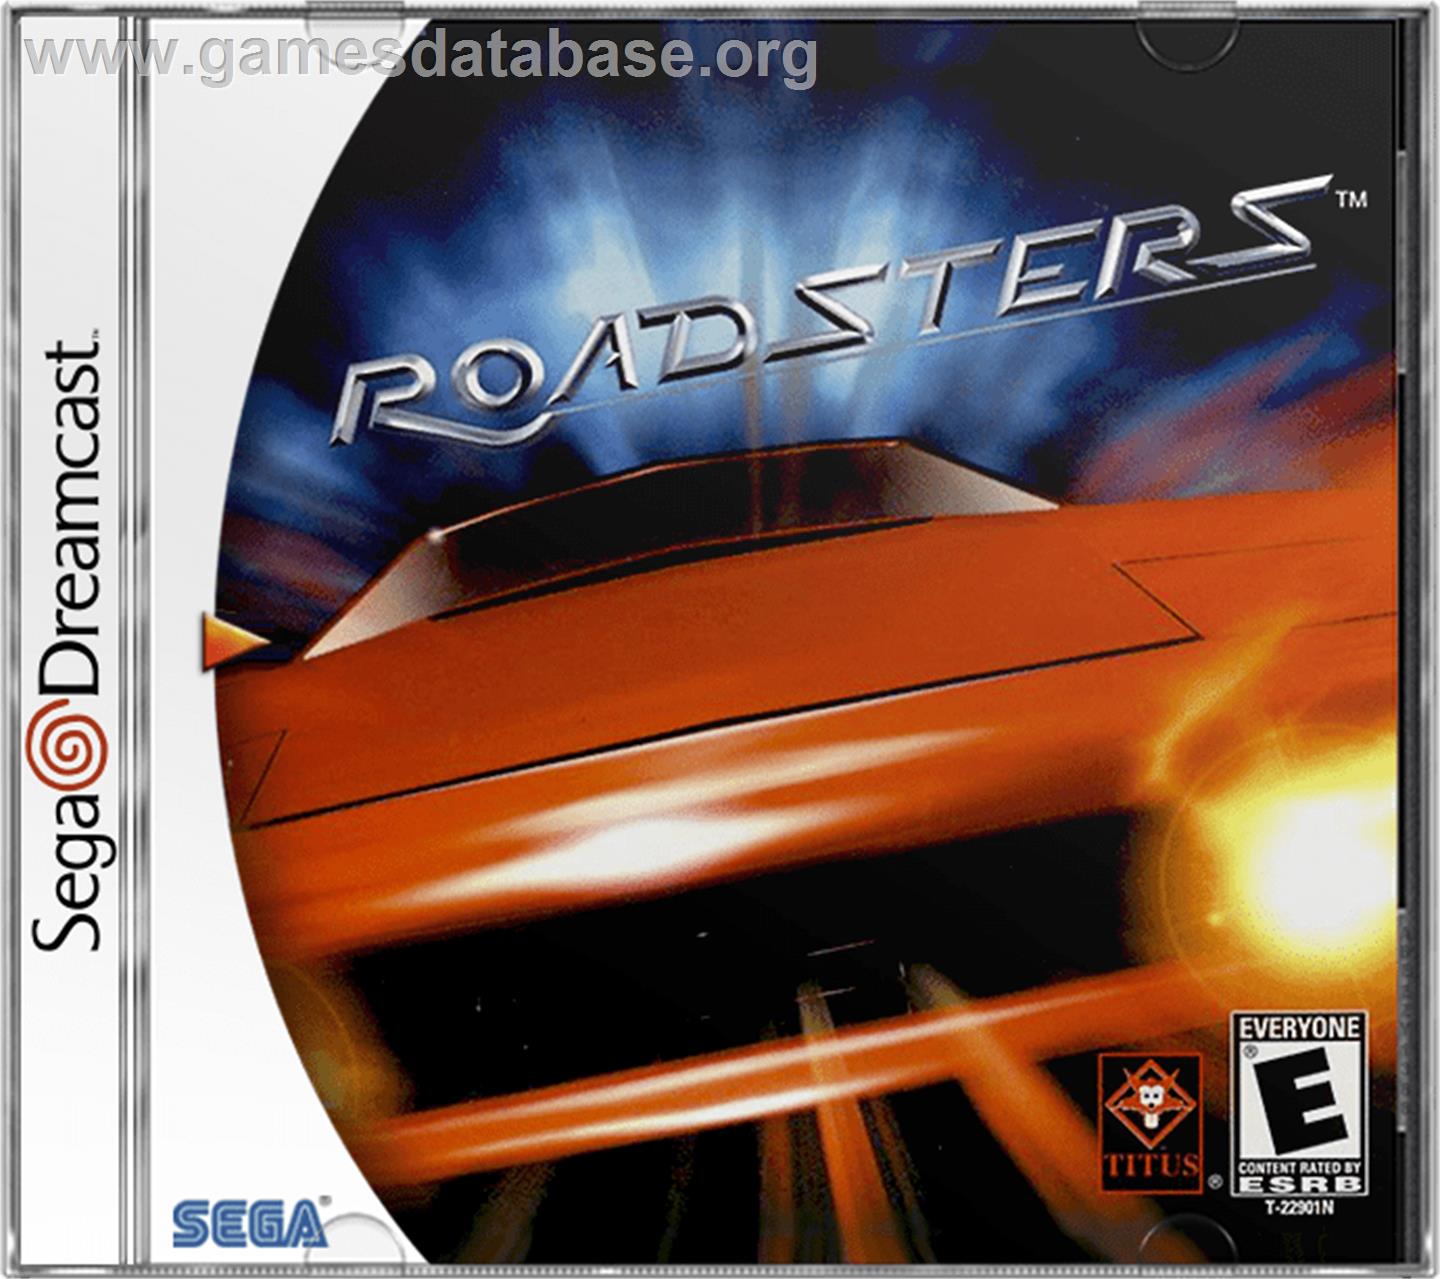 Roadsters - Sega Dreamcast - Artwork - Box